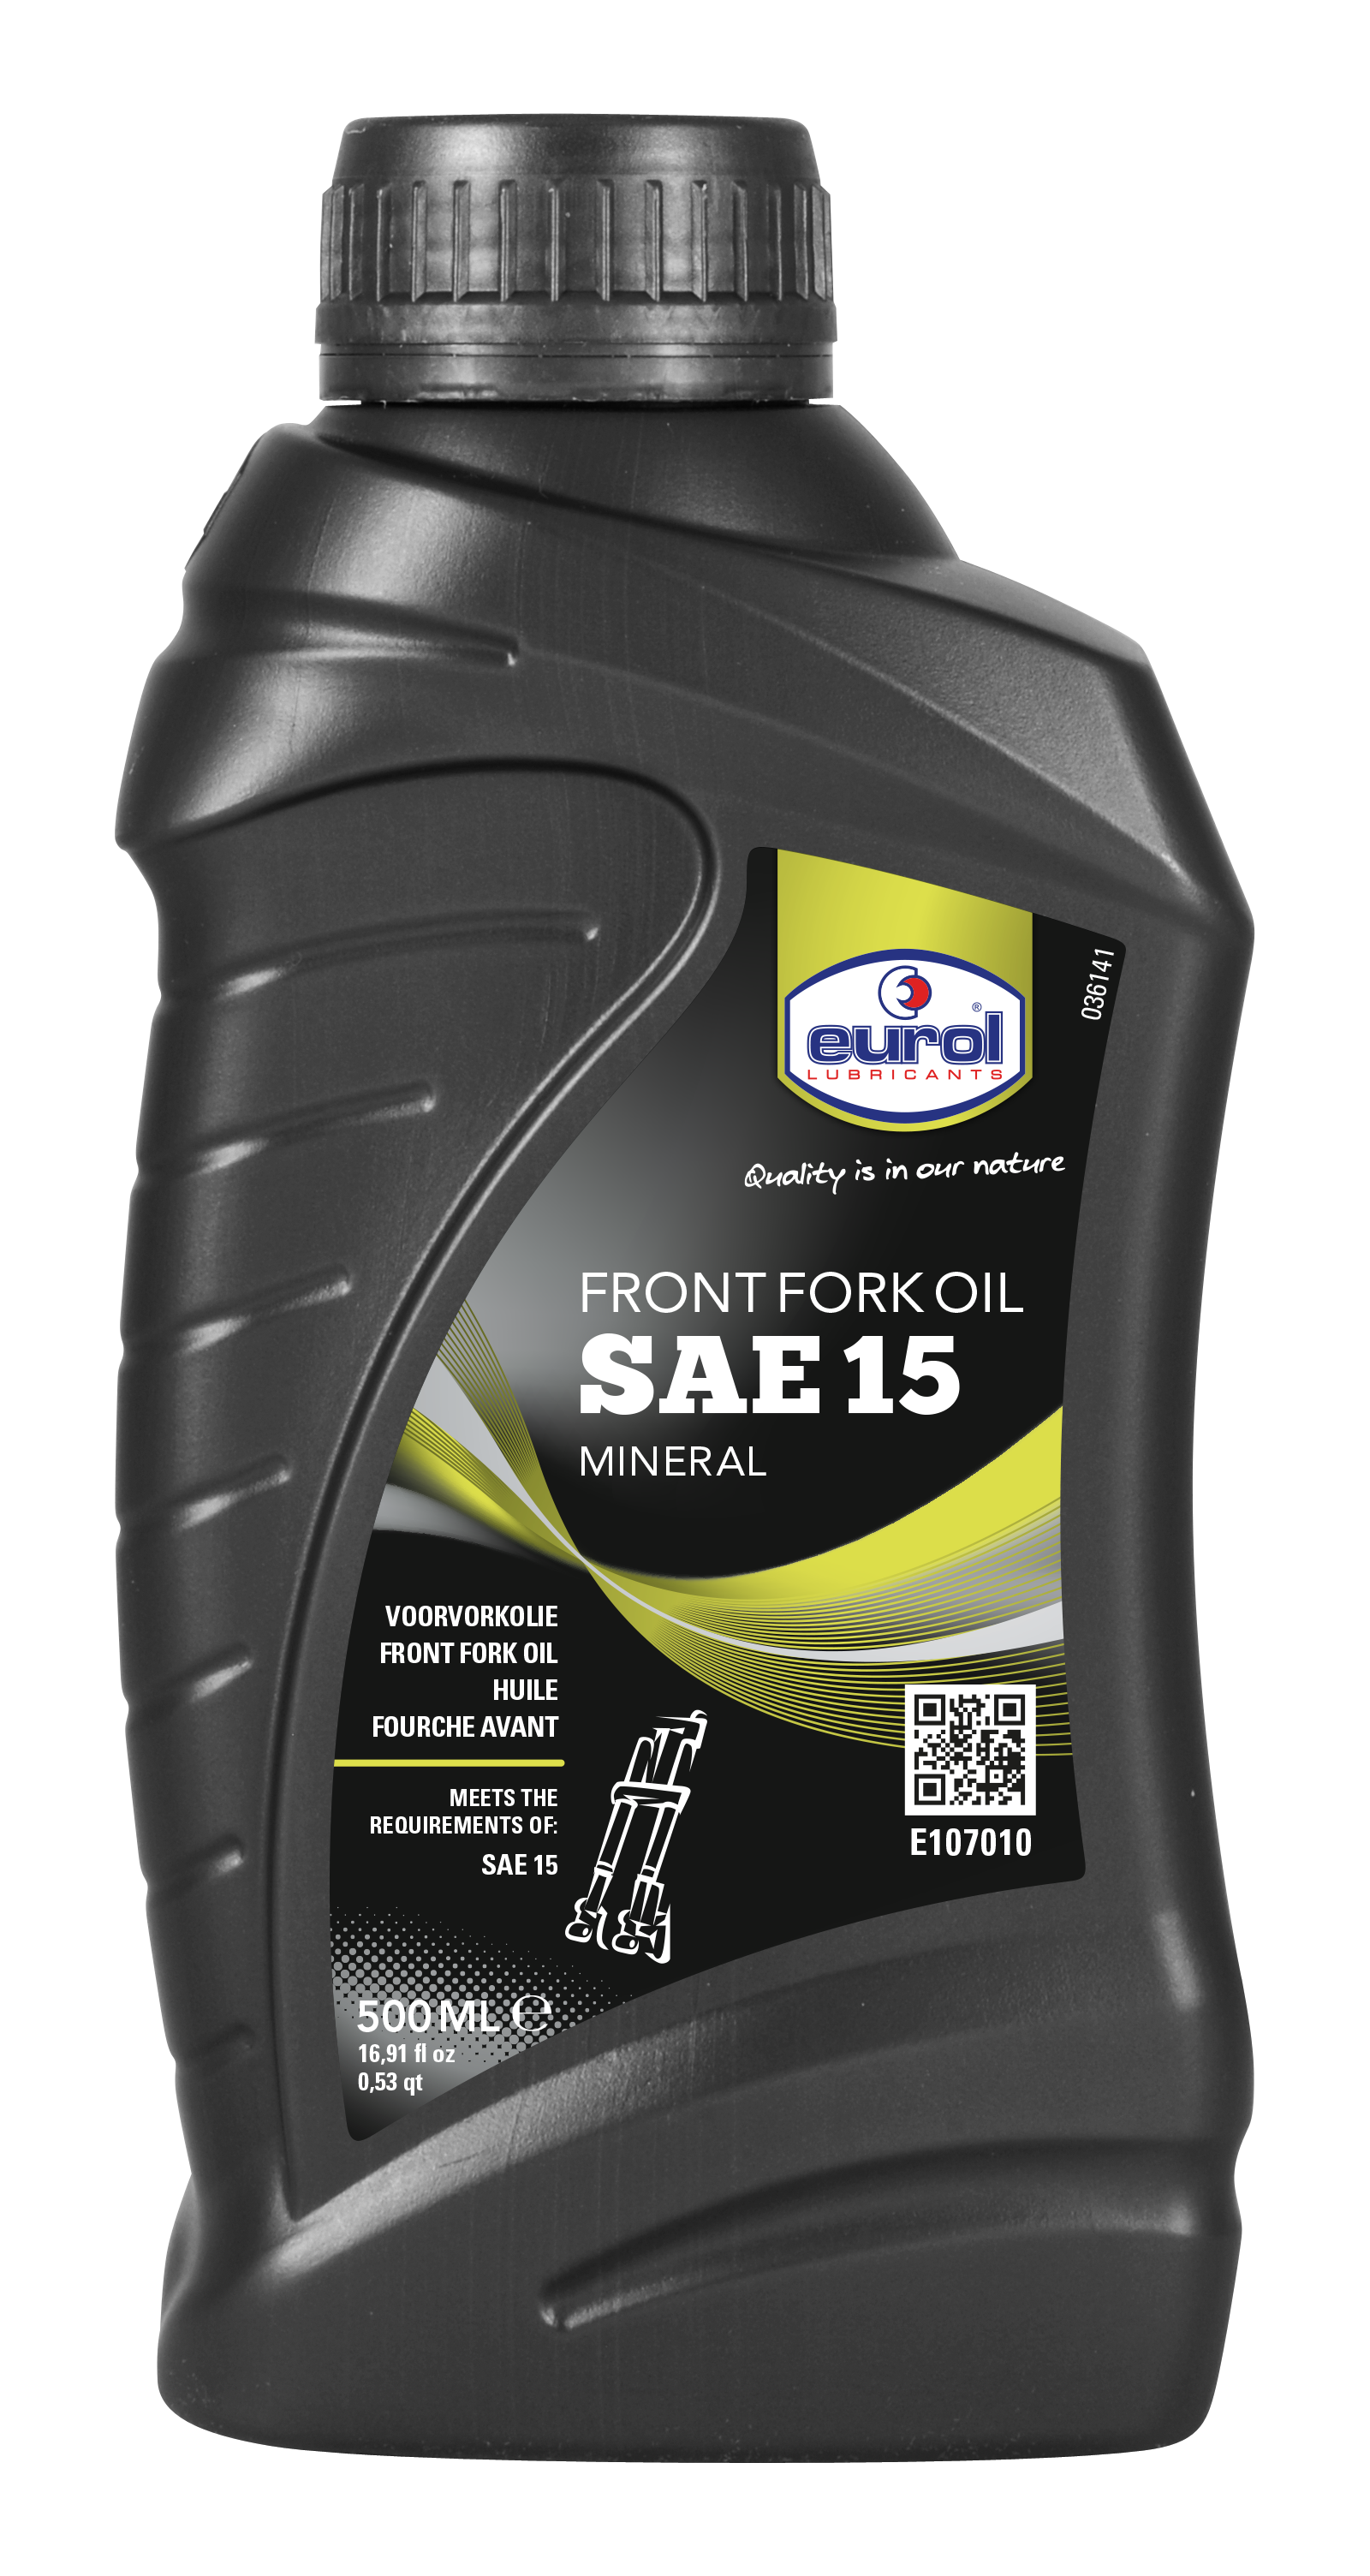 Eurol Front Fork Oil SAE 15, 500 ml